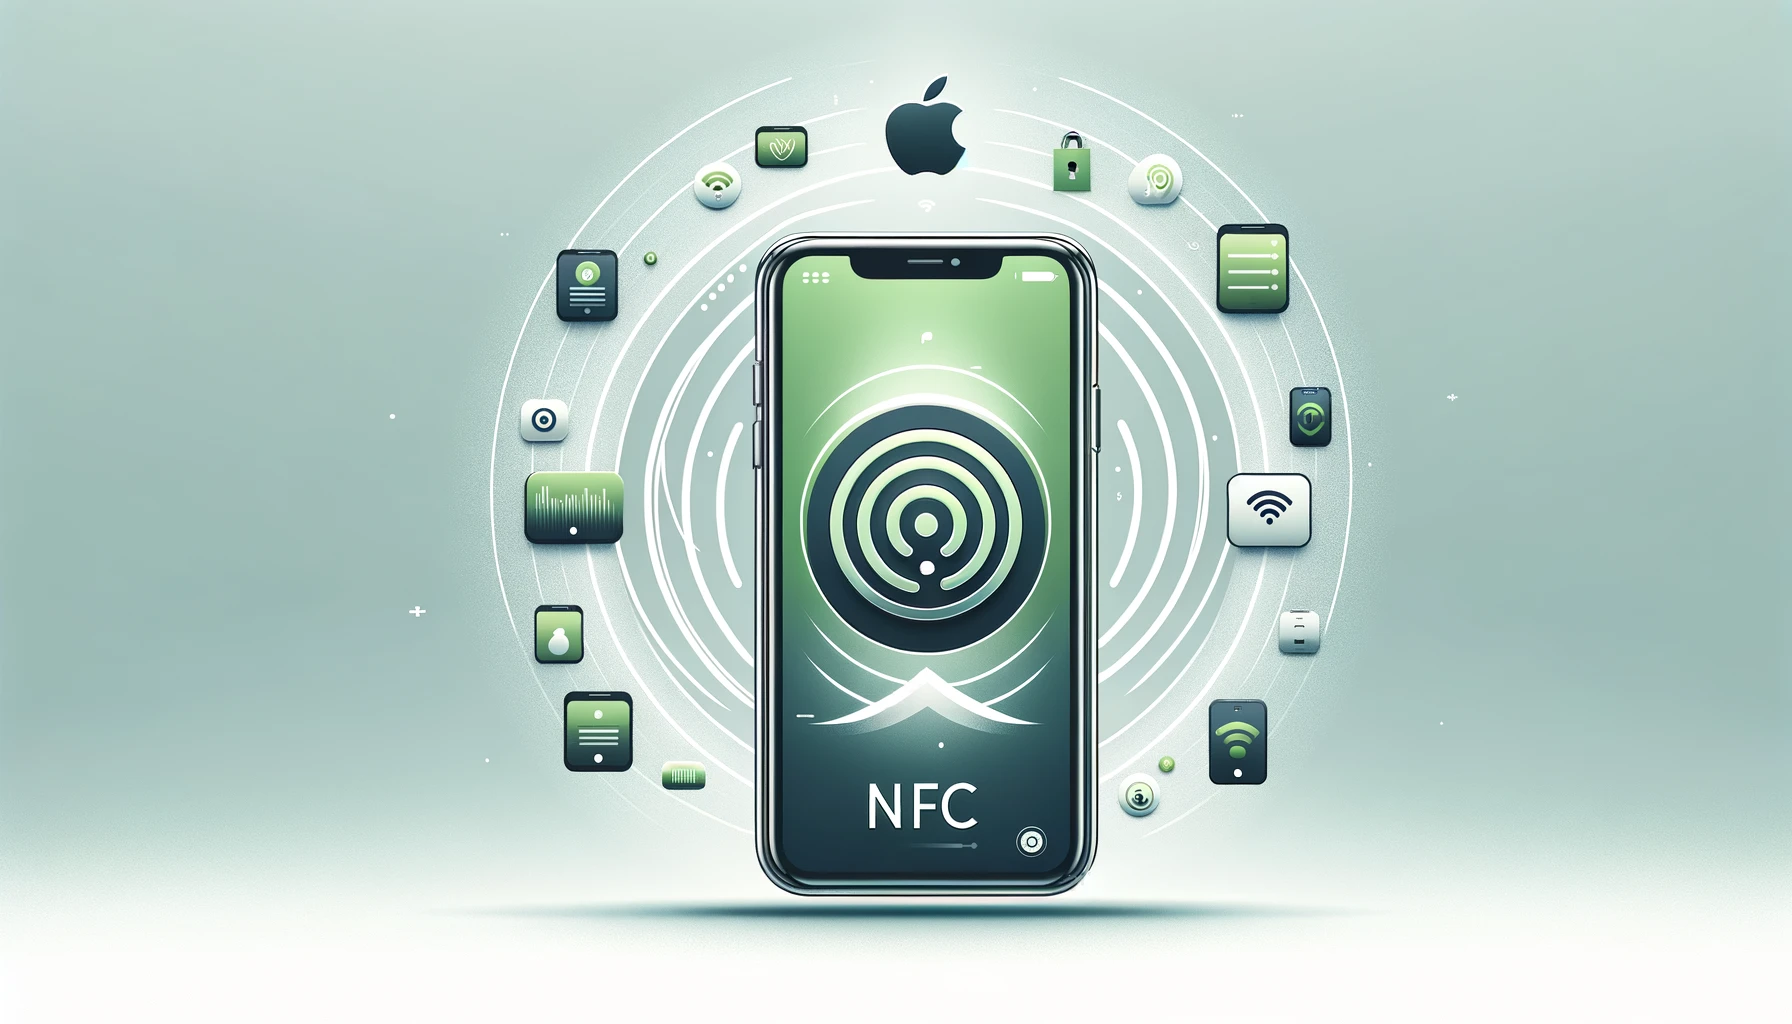 เหตุใด NFC จึงมีความสำคัญ